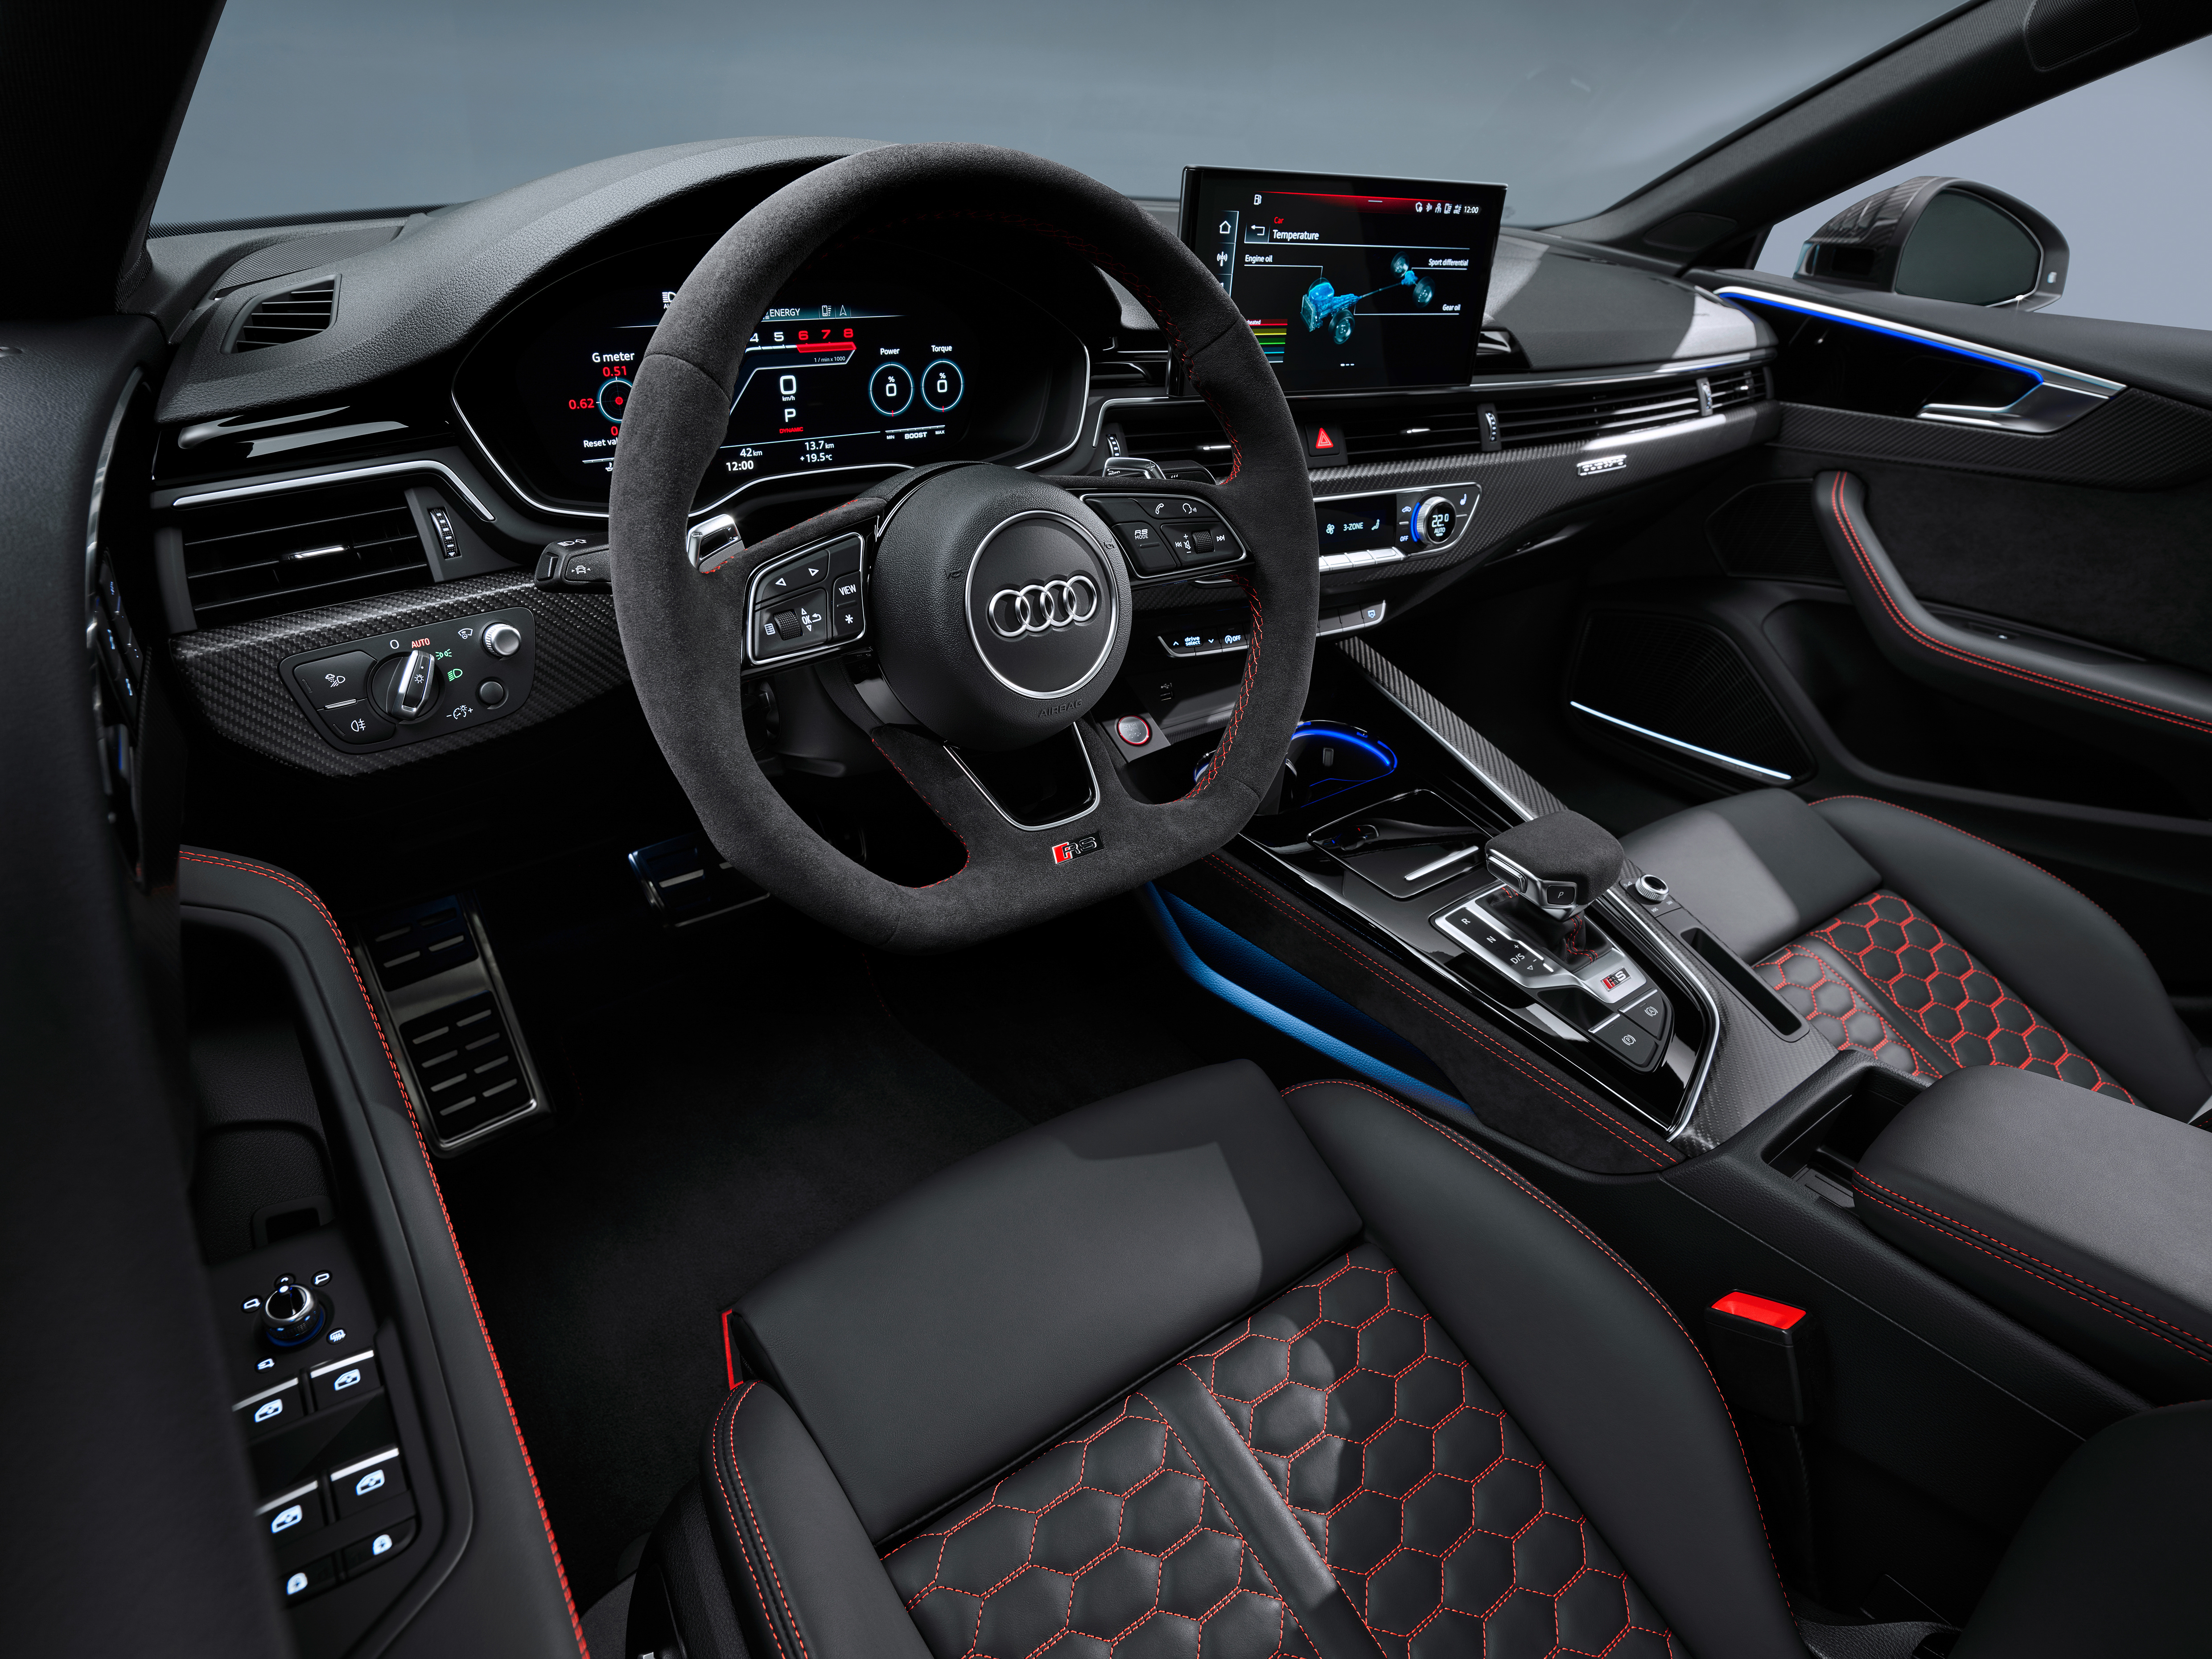 Audi A3 Sportback interior big